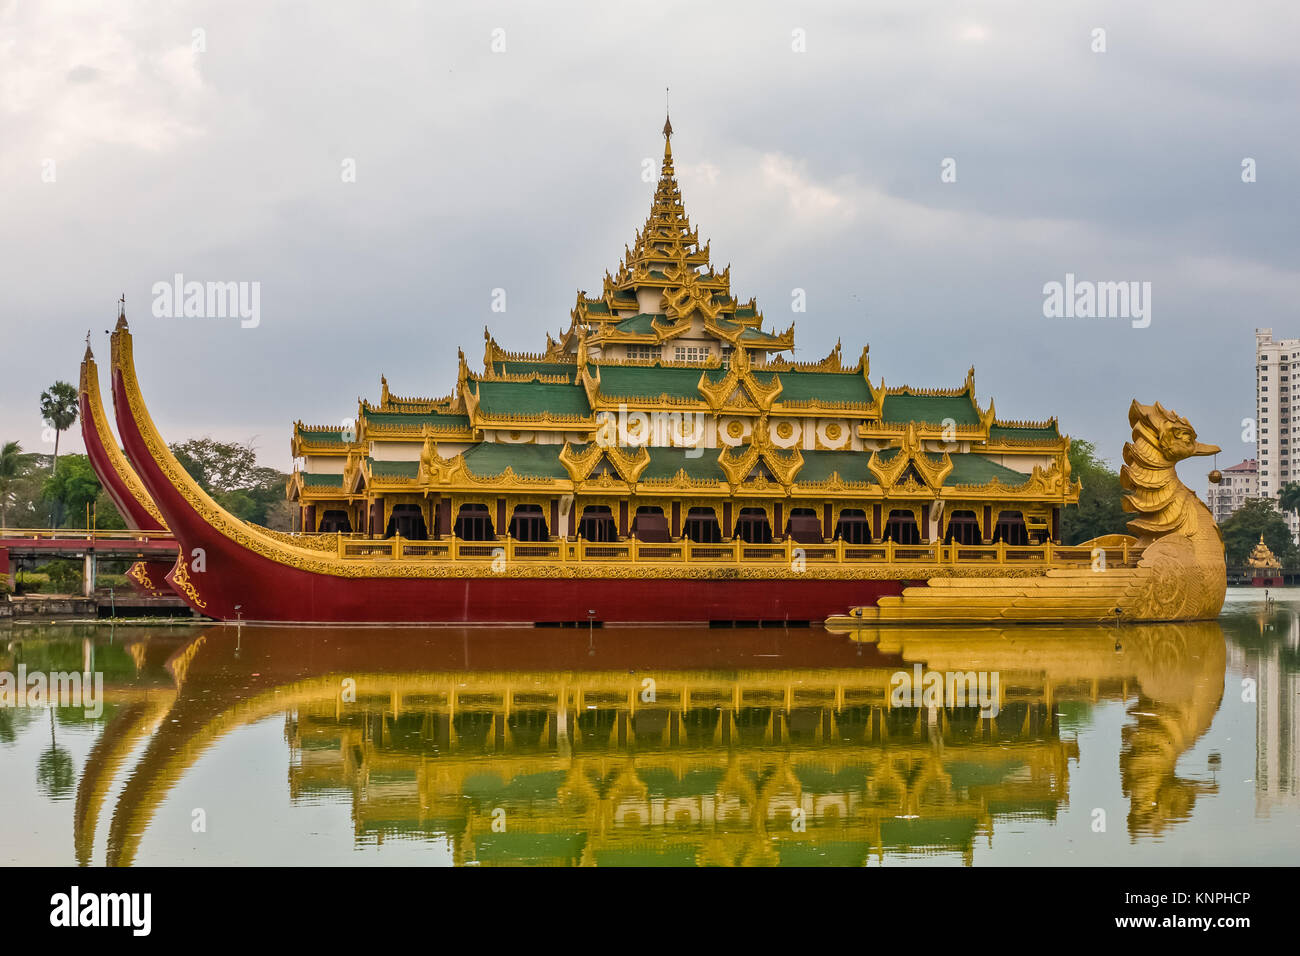 Karaweik en béton, une réplique d'une barge royale construite en 1972, Yangon, Myanmar Banque D'Images